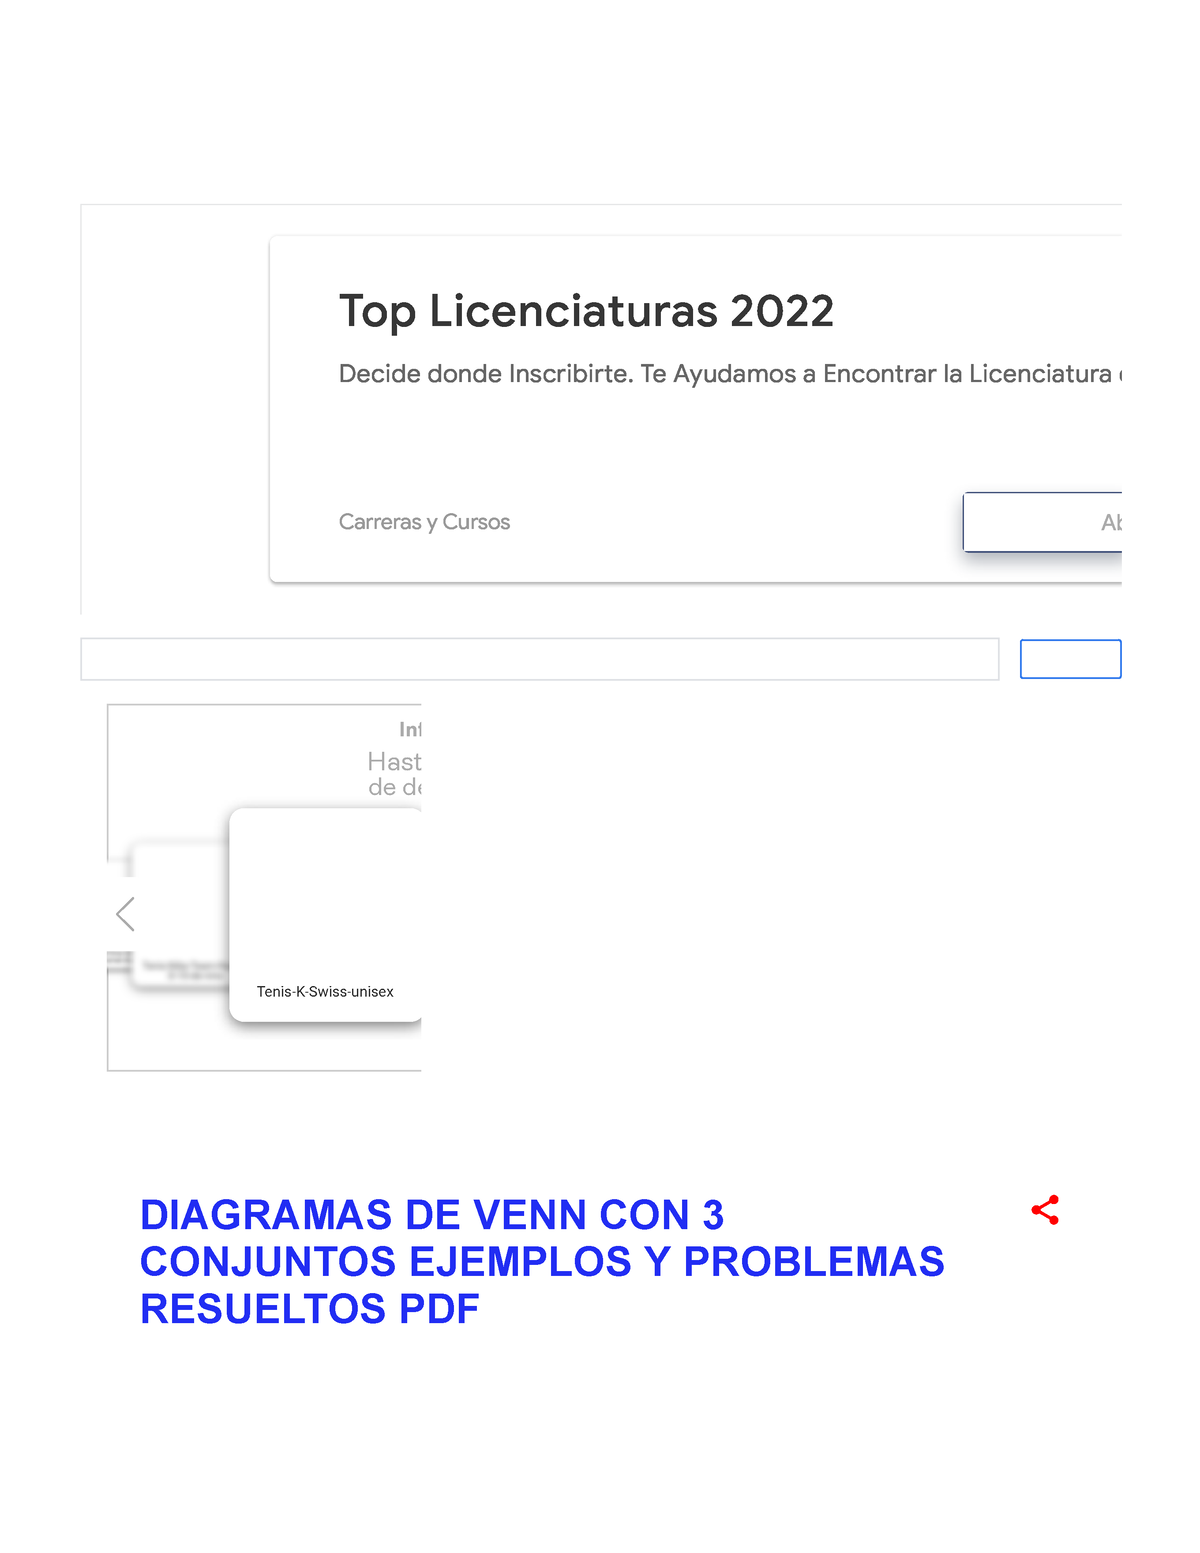 Diagramas DE VENN CON 3 Conjuntos Ejemplos Y Problemas Resueltos PDF - Top  Licenciaturas 2022 Decide - Studocu